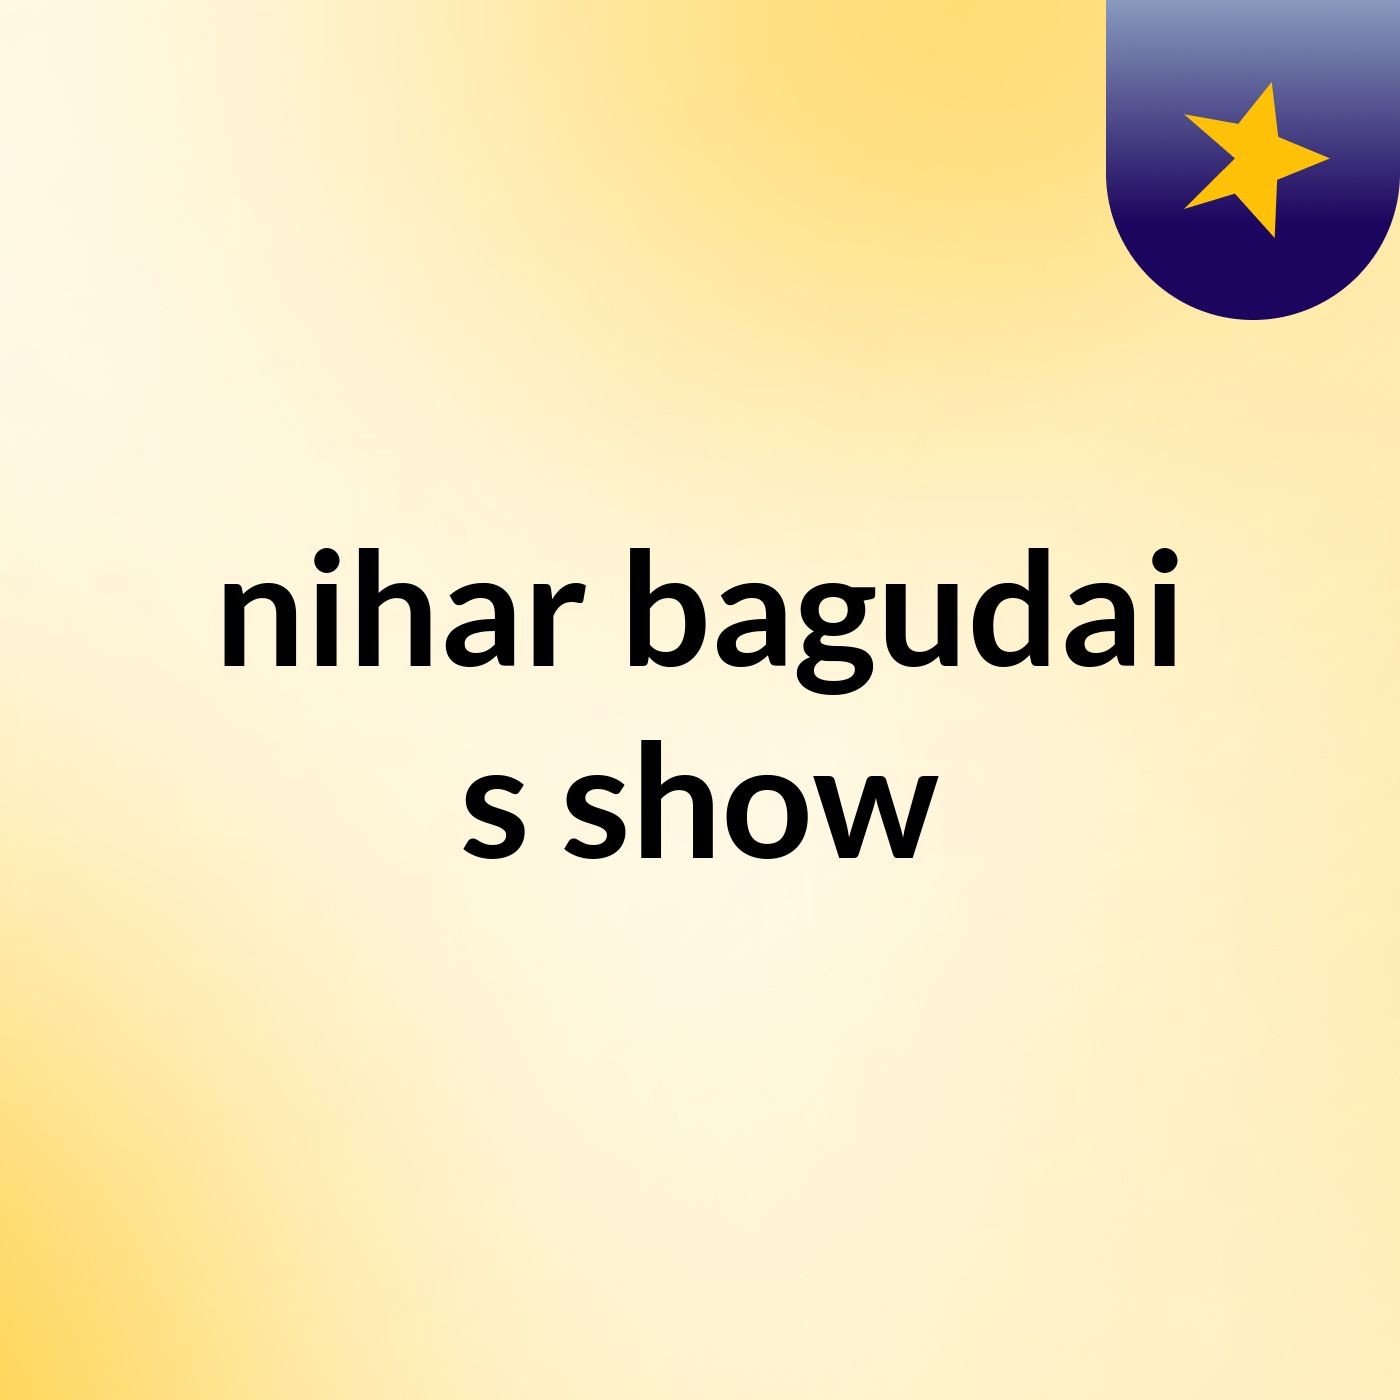 nihar bagudai's show